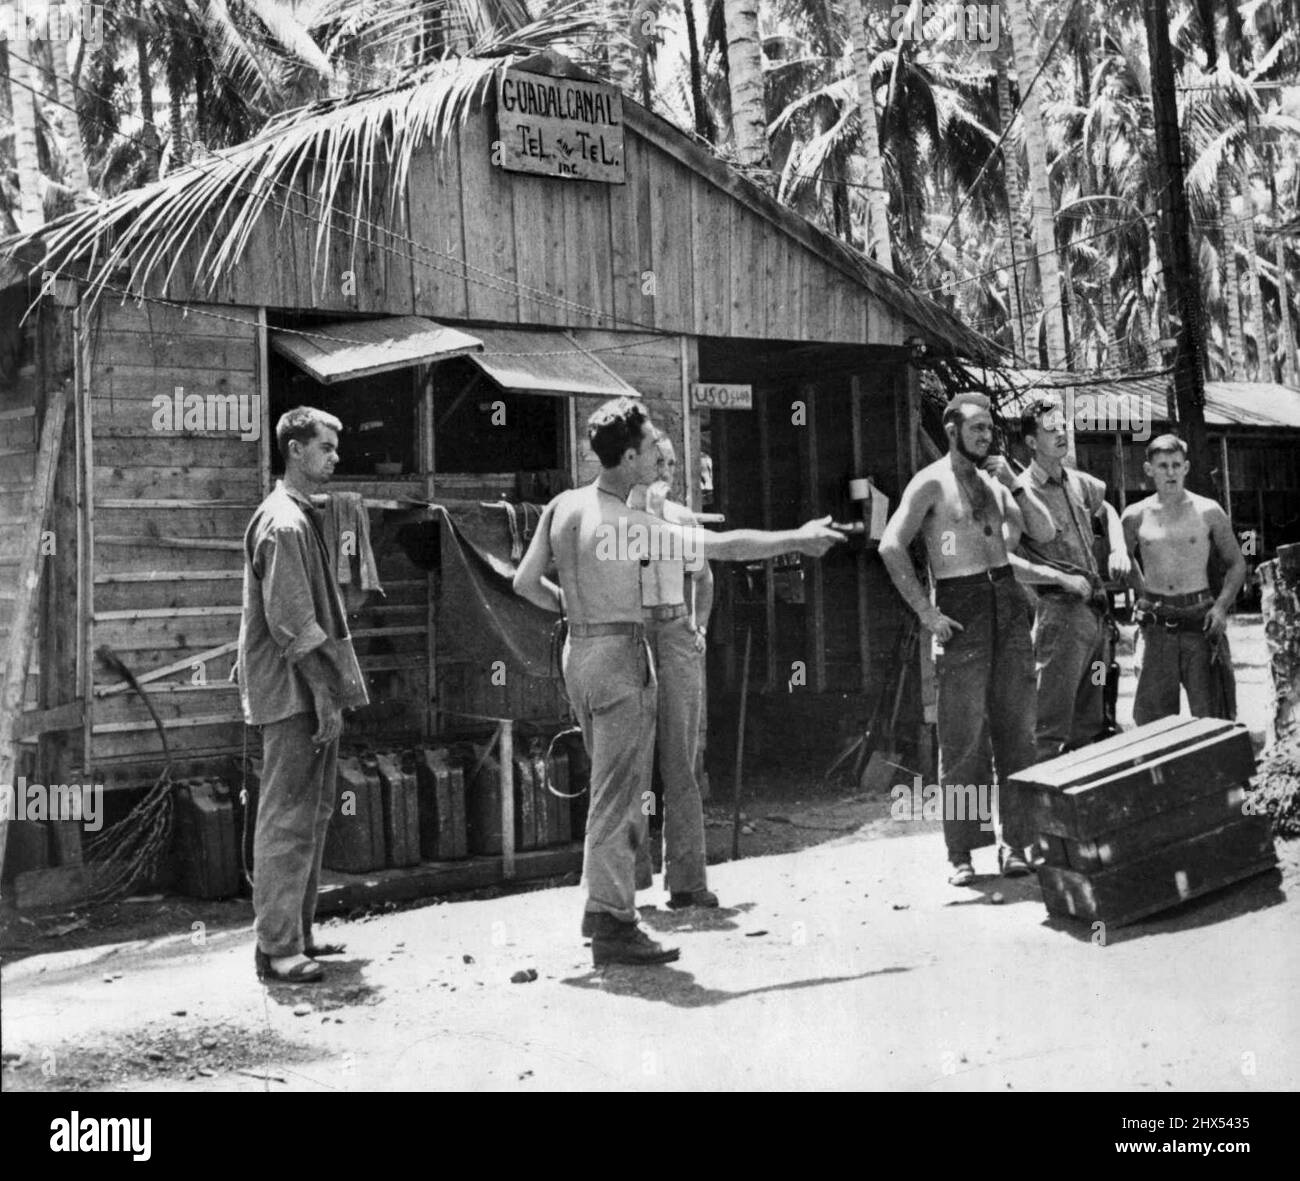 Centre de communication de Marines à la base sur l'île Guadalcanal -- dans cette photo du front de combat sur Guadalcanal un groupe de Marines américaines sont vus à l'extérieur du bâtiment téléphonique, le quartier général des communications d'une unité des forces américaines sur l'île. 23 novembre 1942. Banque D'Images